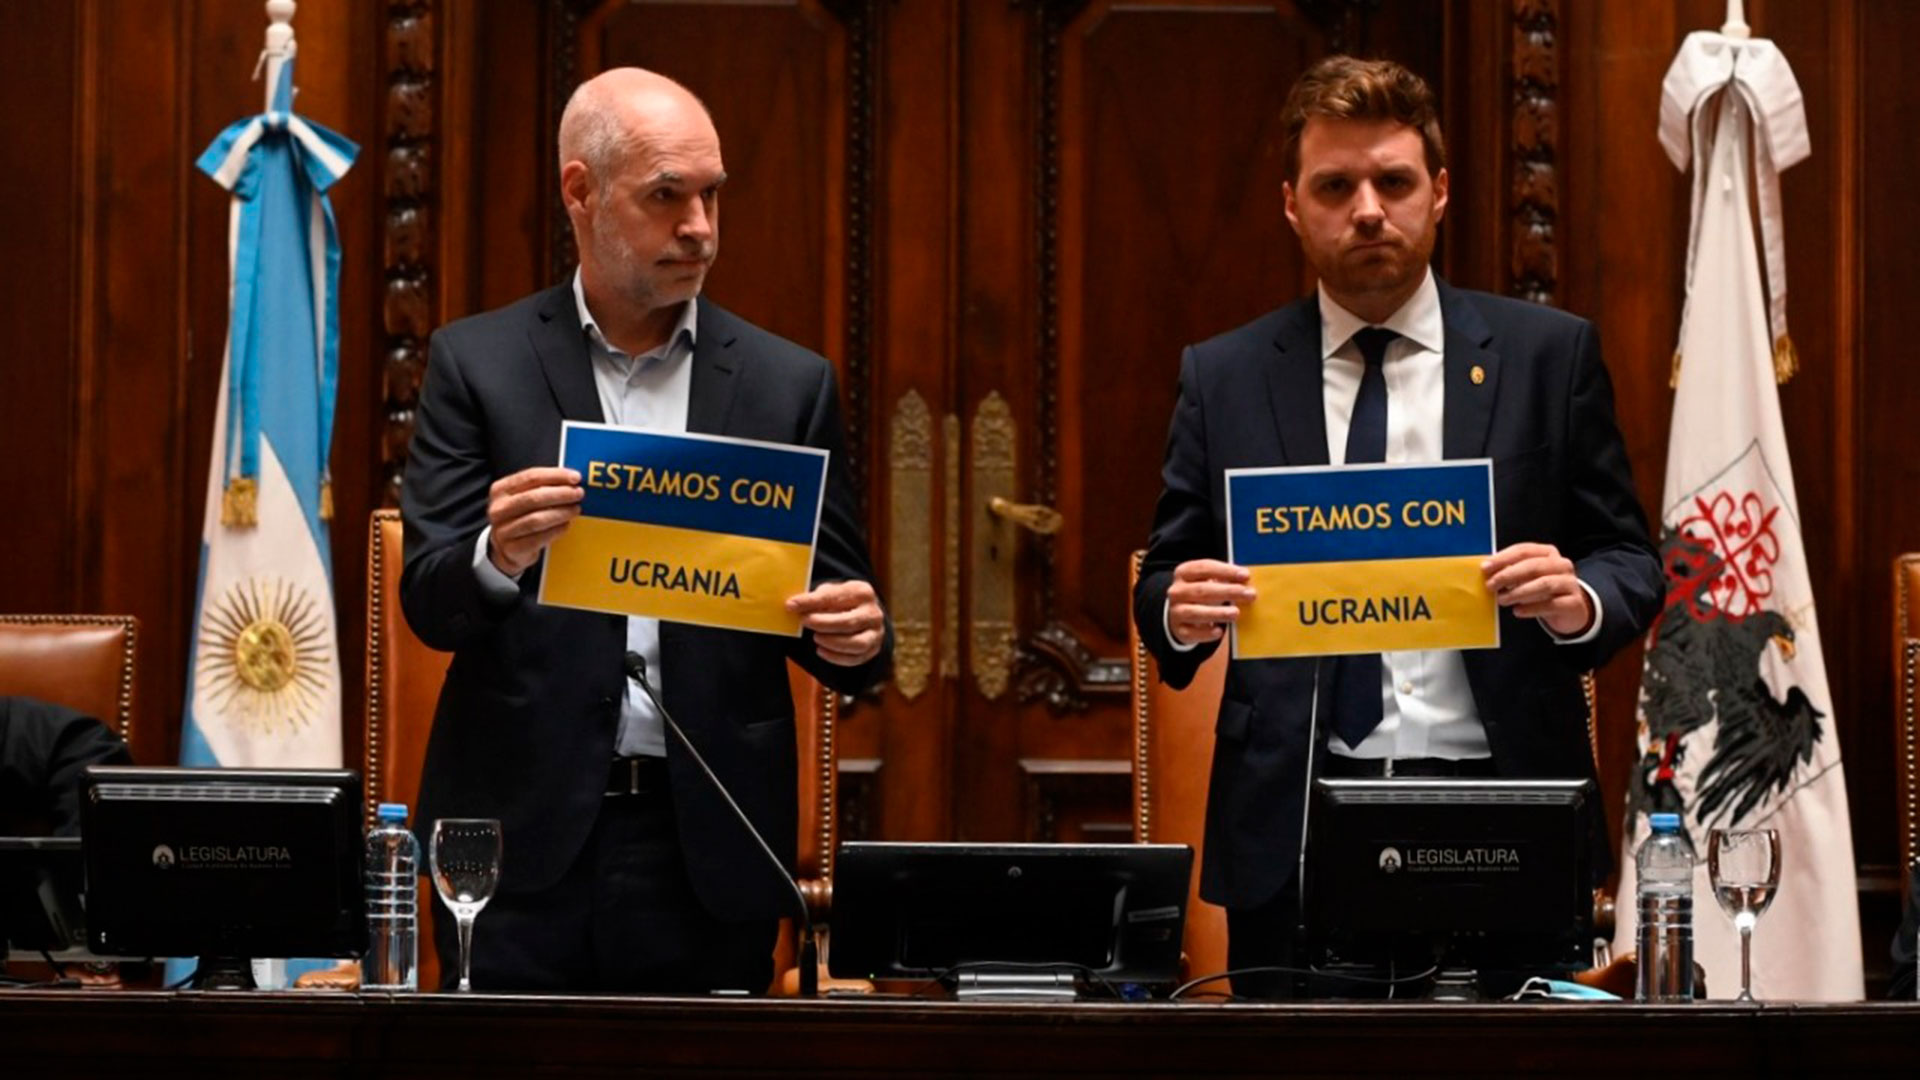 Horacio Rodríguez Larreta y Emmanuel Ferrario, este martes en la Legislatura porteña. Ambos mostraron carteles azules y amarillos con la frase "Estamos con Ucrania" 